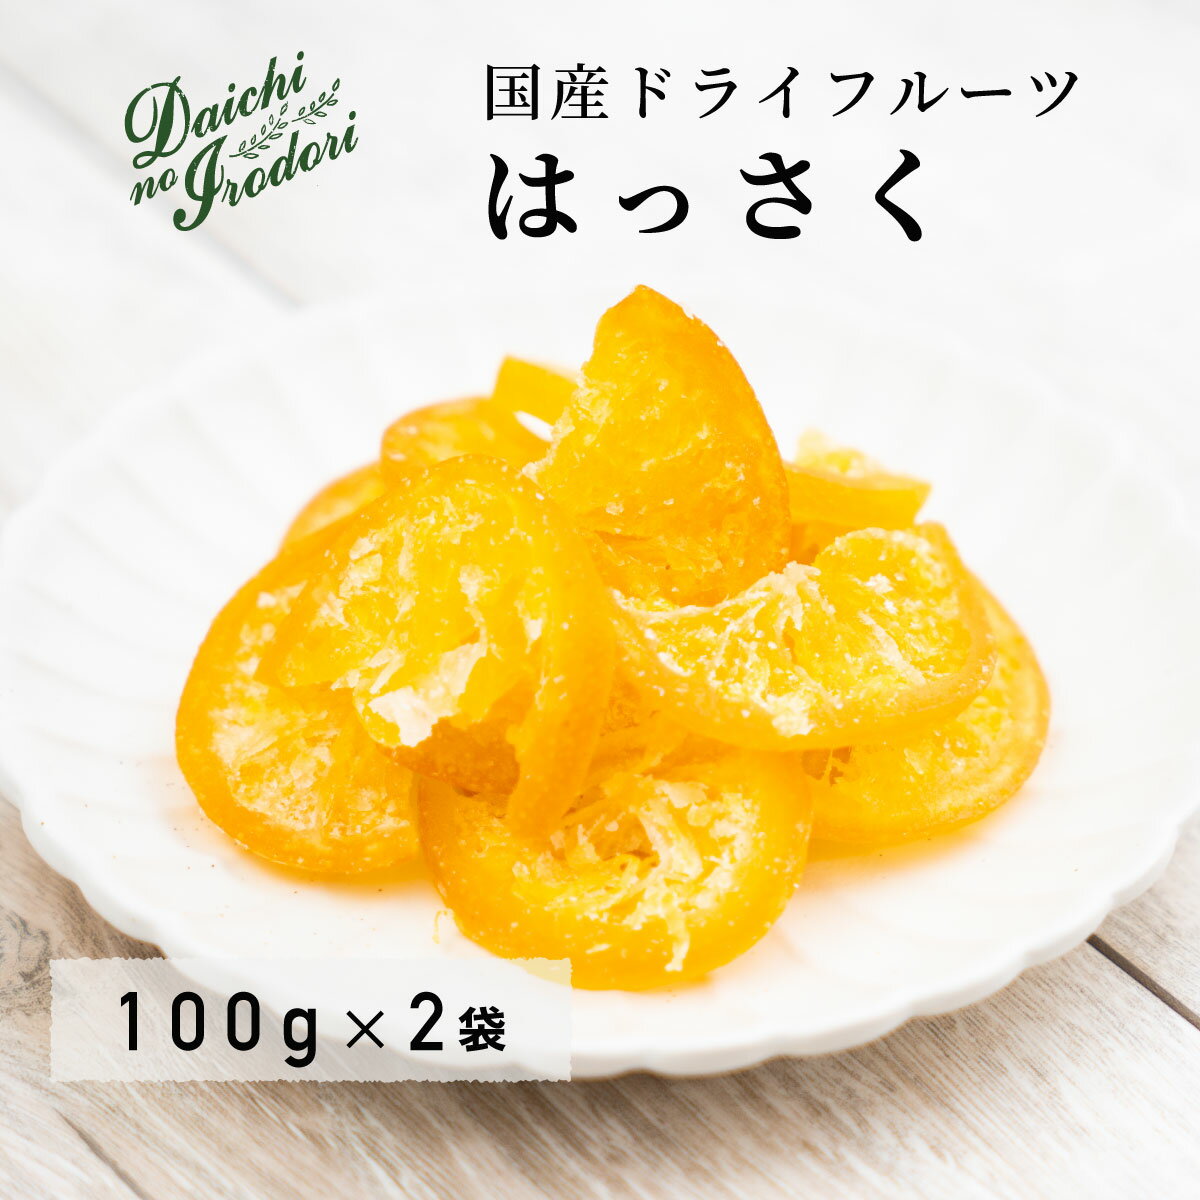 乾燥橘子果實 水果乾 日本產 八朔 100g x 2包 夾鏈袋裝日本必買 | 日本樂天熱銷